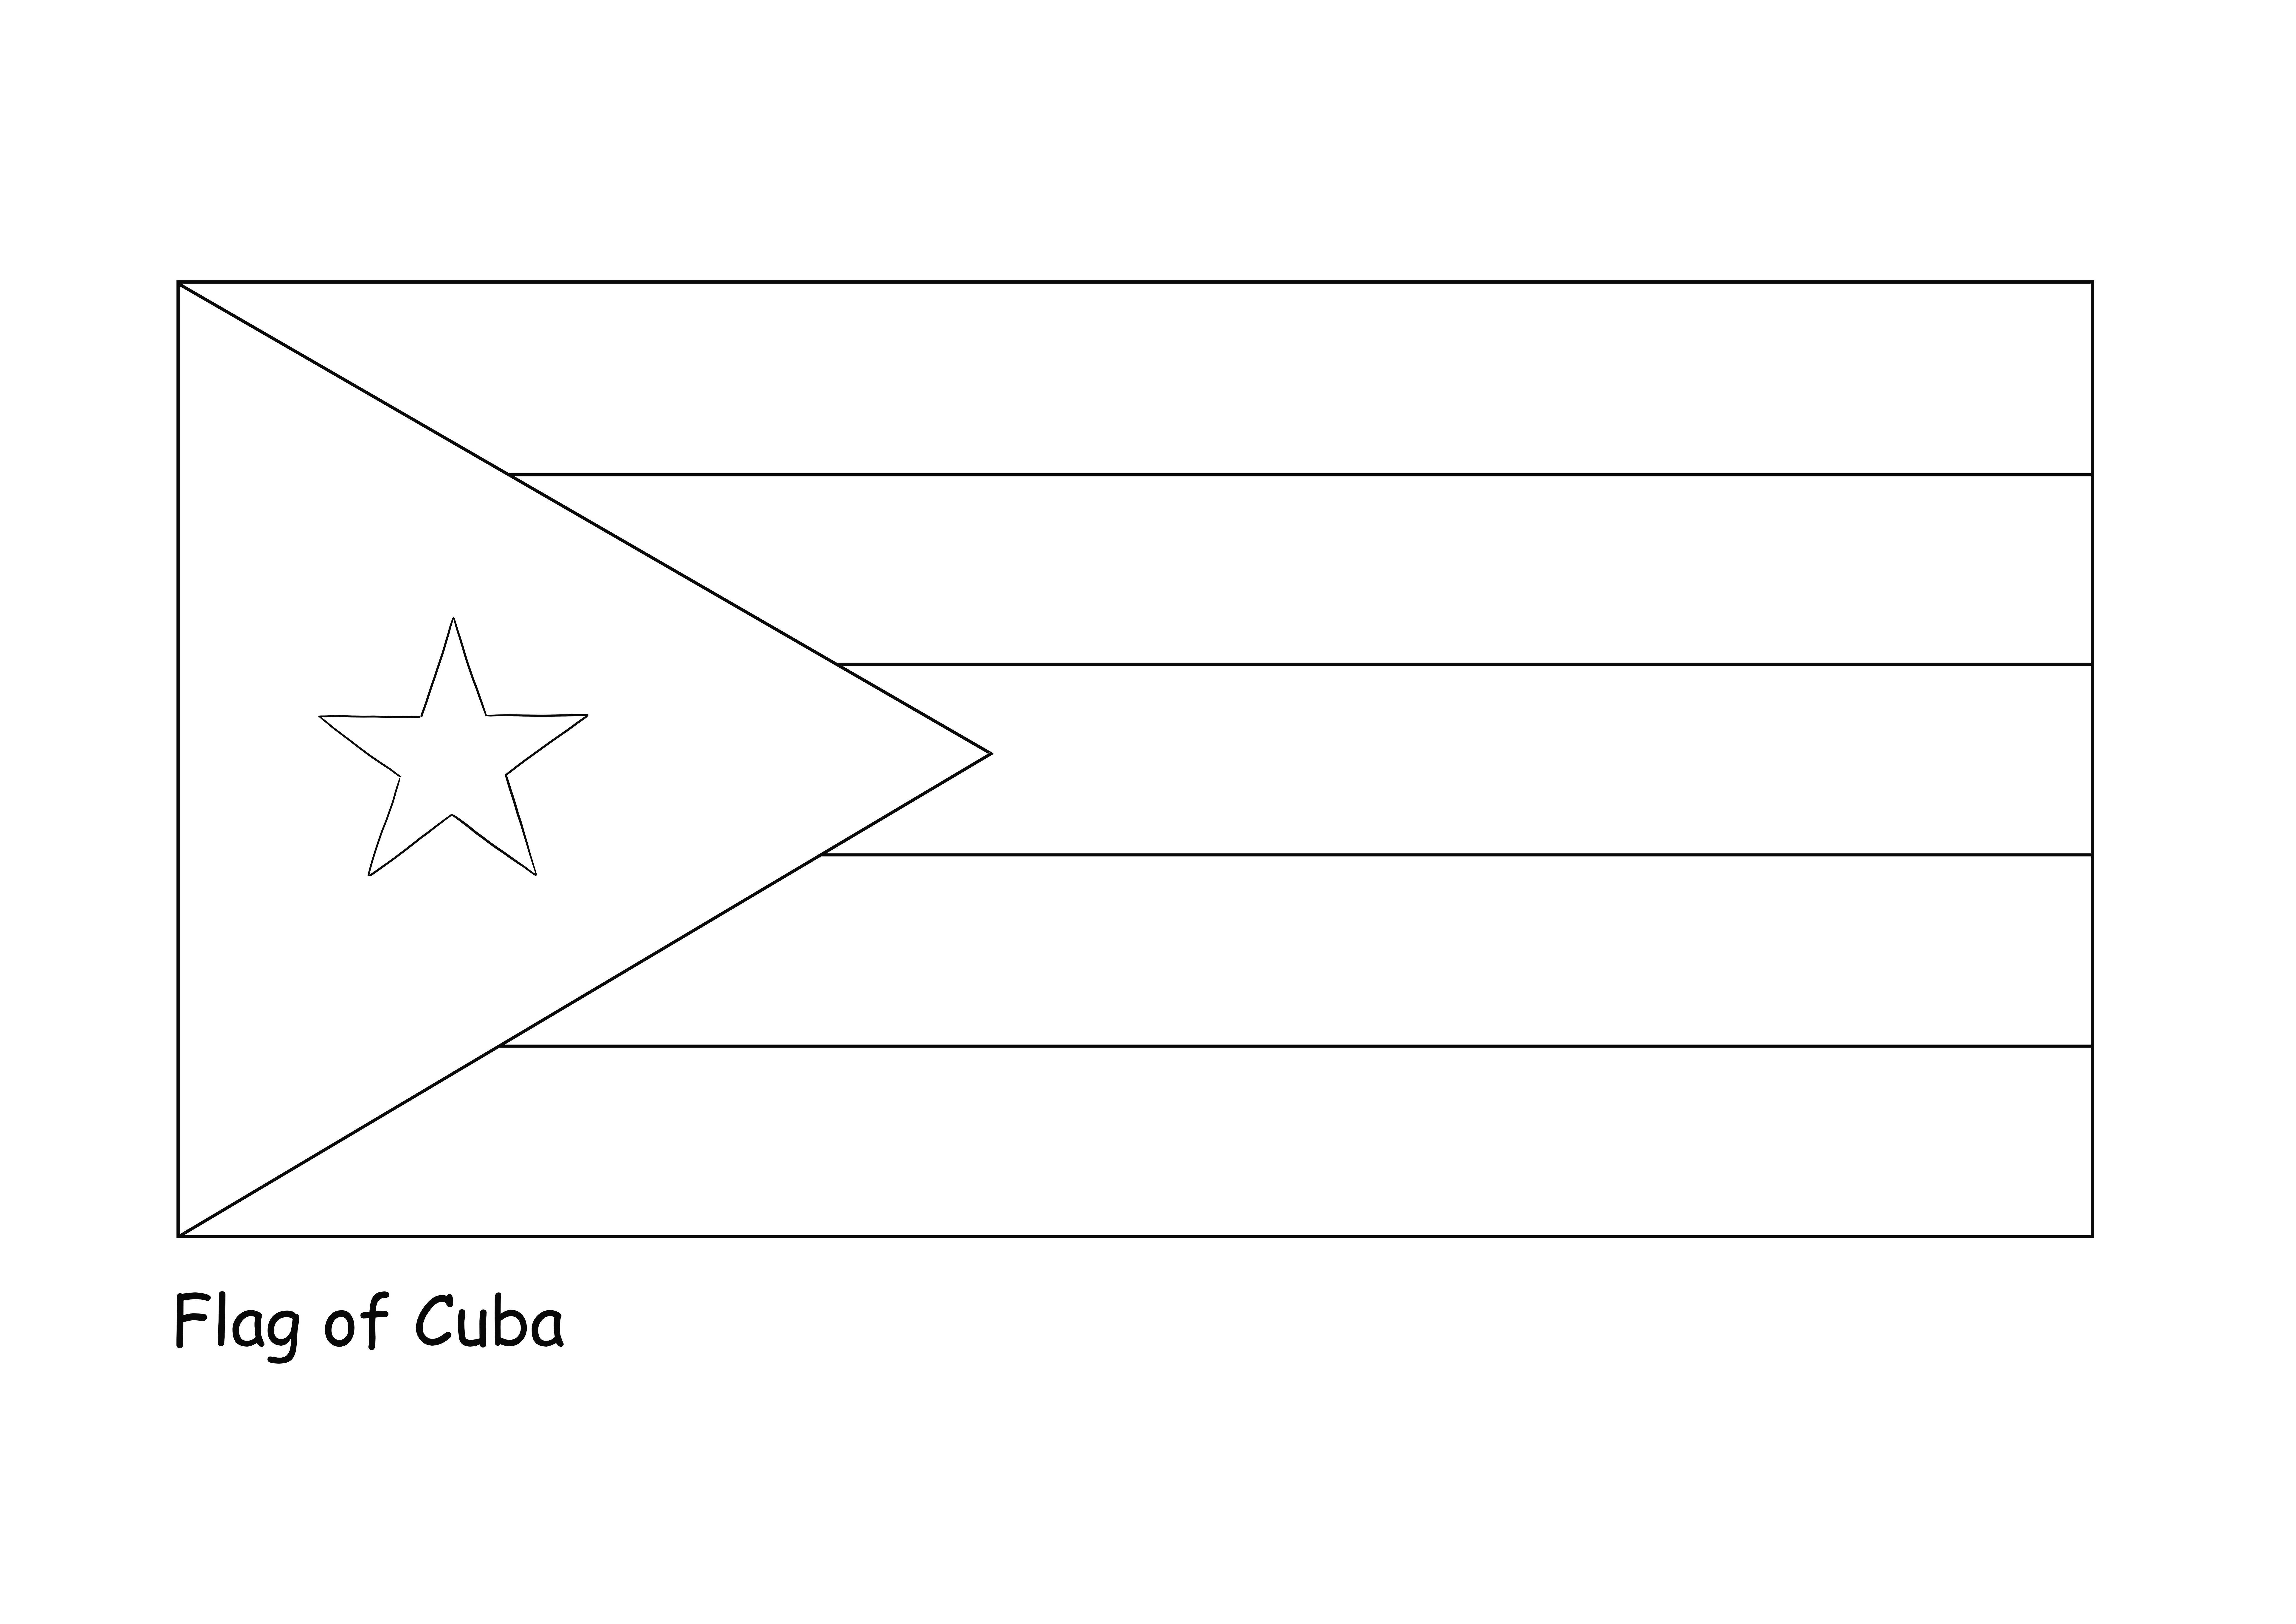 Küba Bayrağı renklendirmesi kolay boyama resmi çocuklar için ücretsiz indir